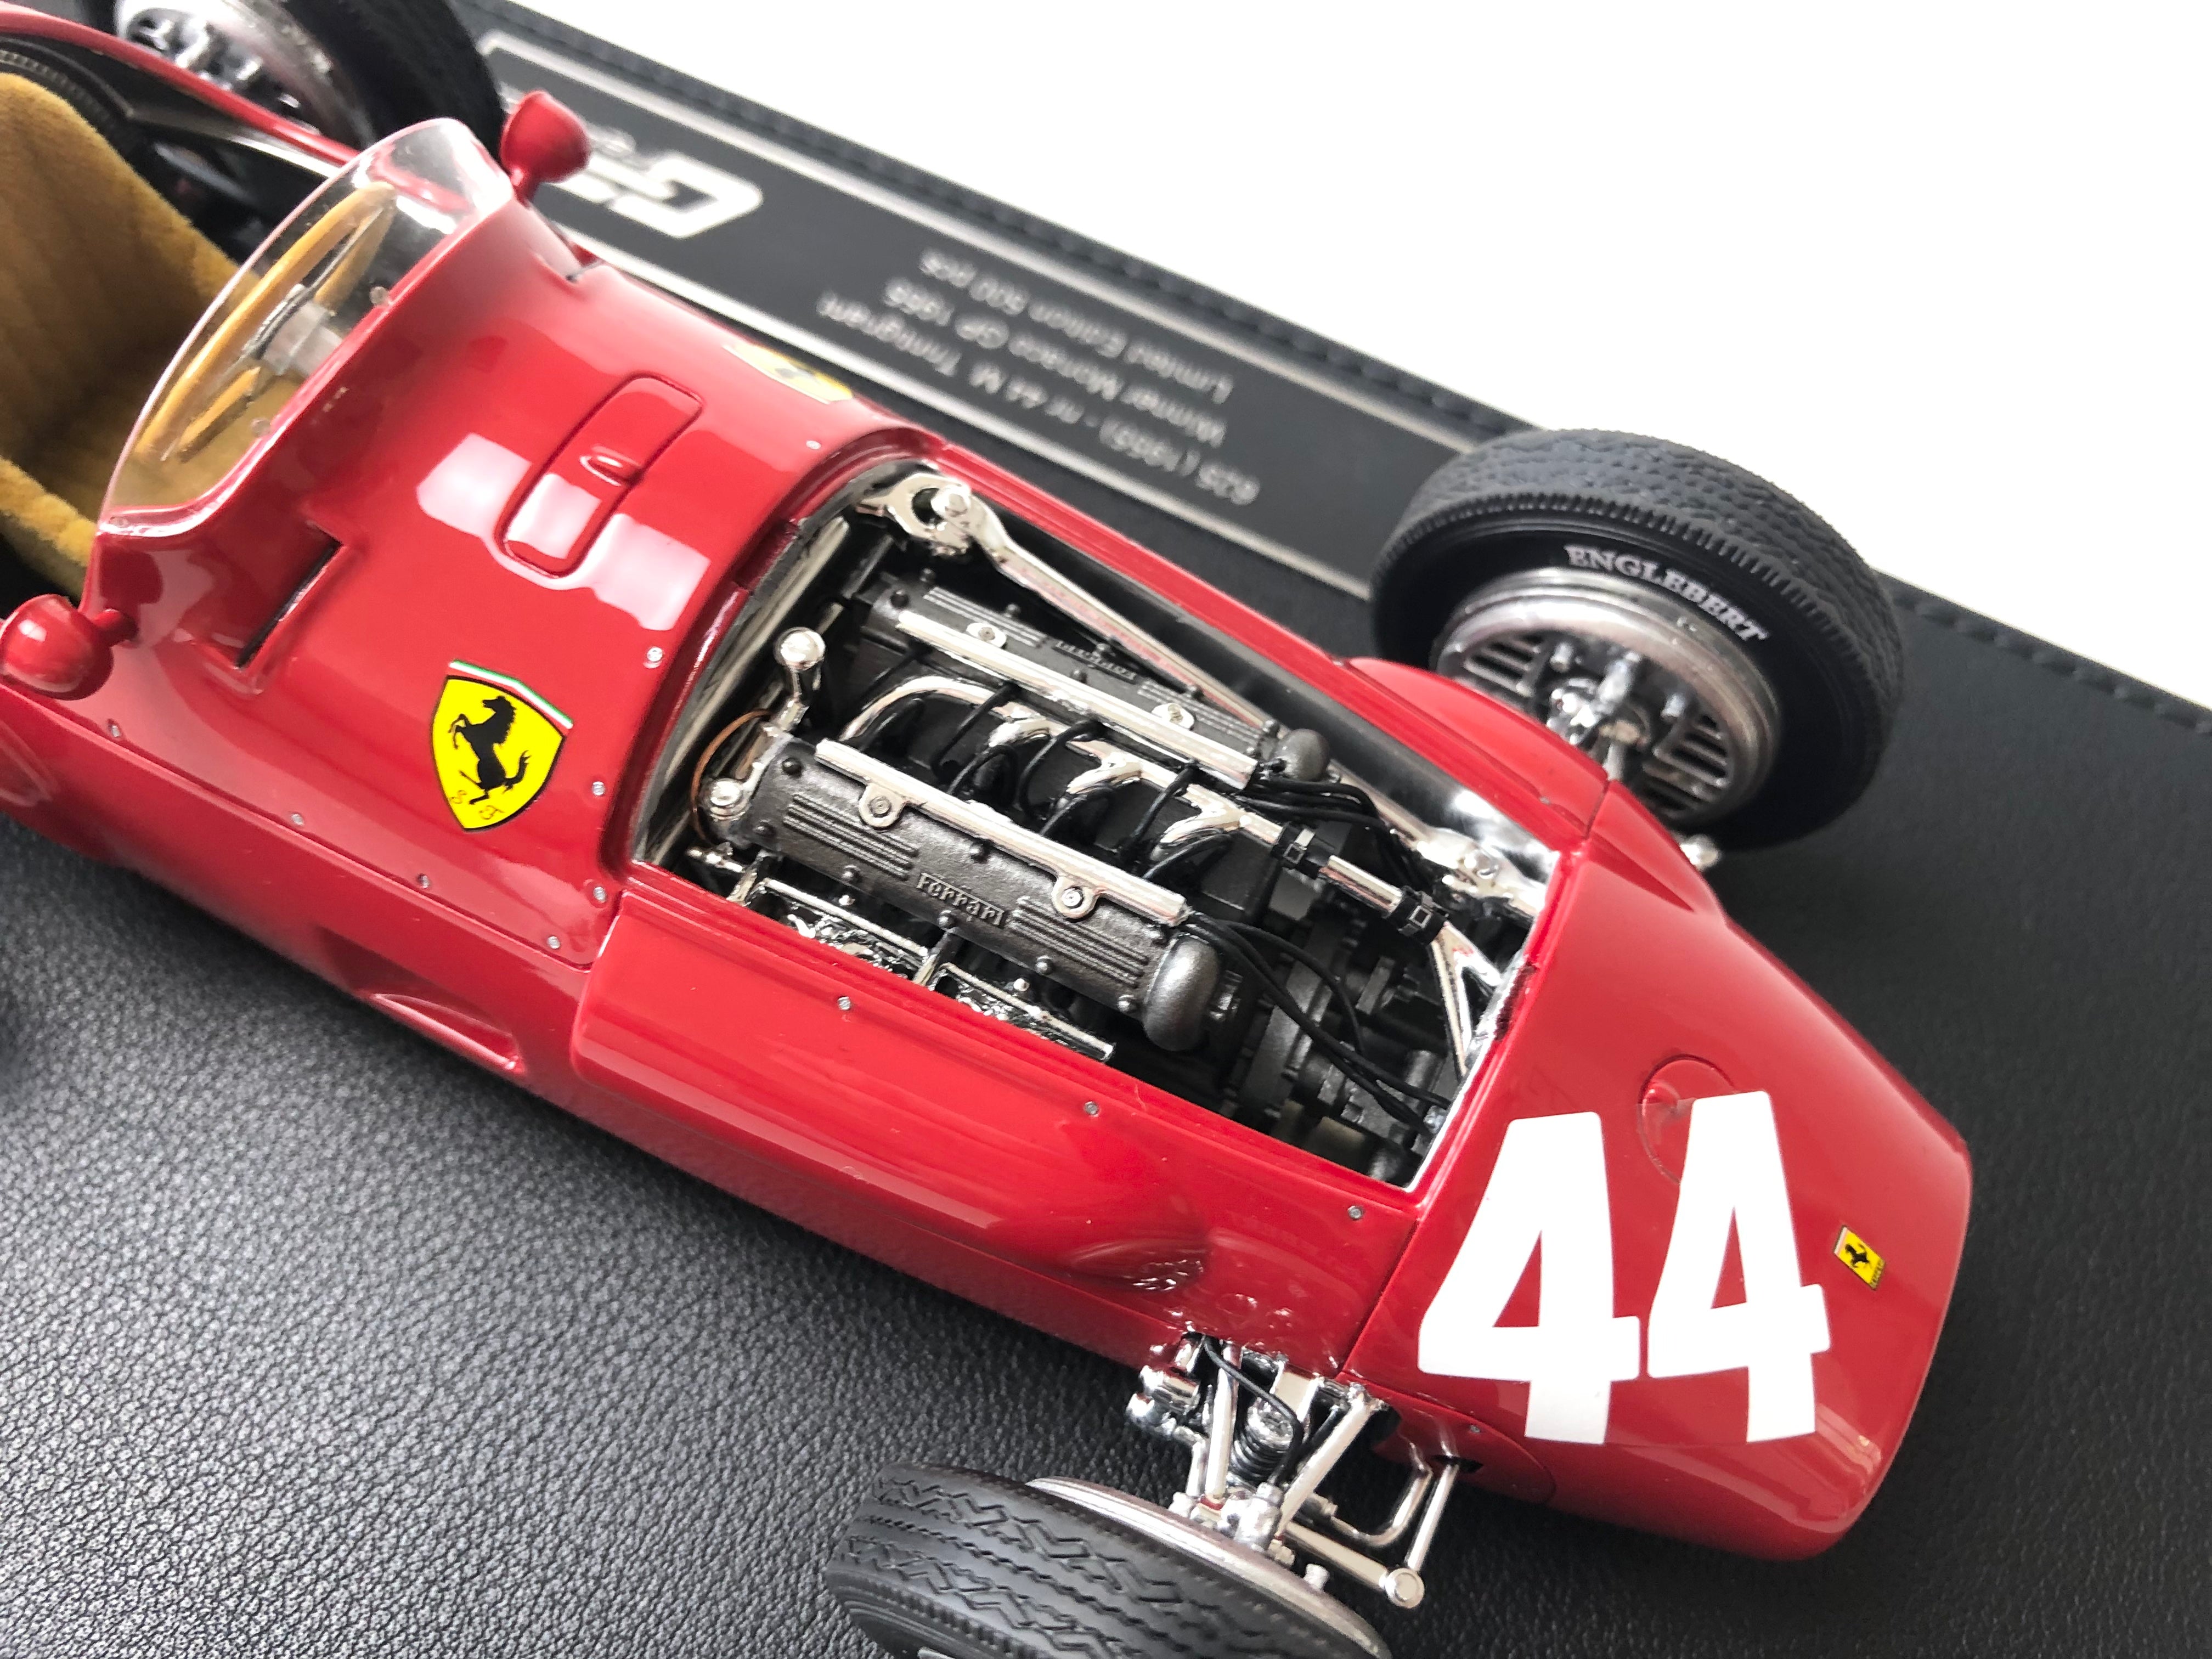 1955 Ferrari 625 #44 Monaco Grand Prix winner 1:18 scale